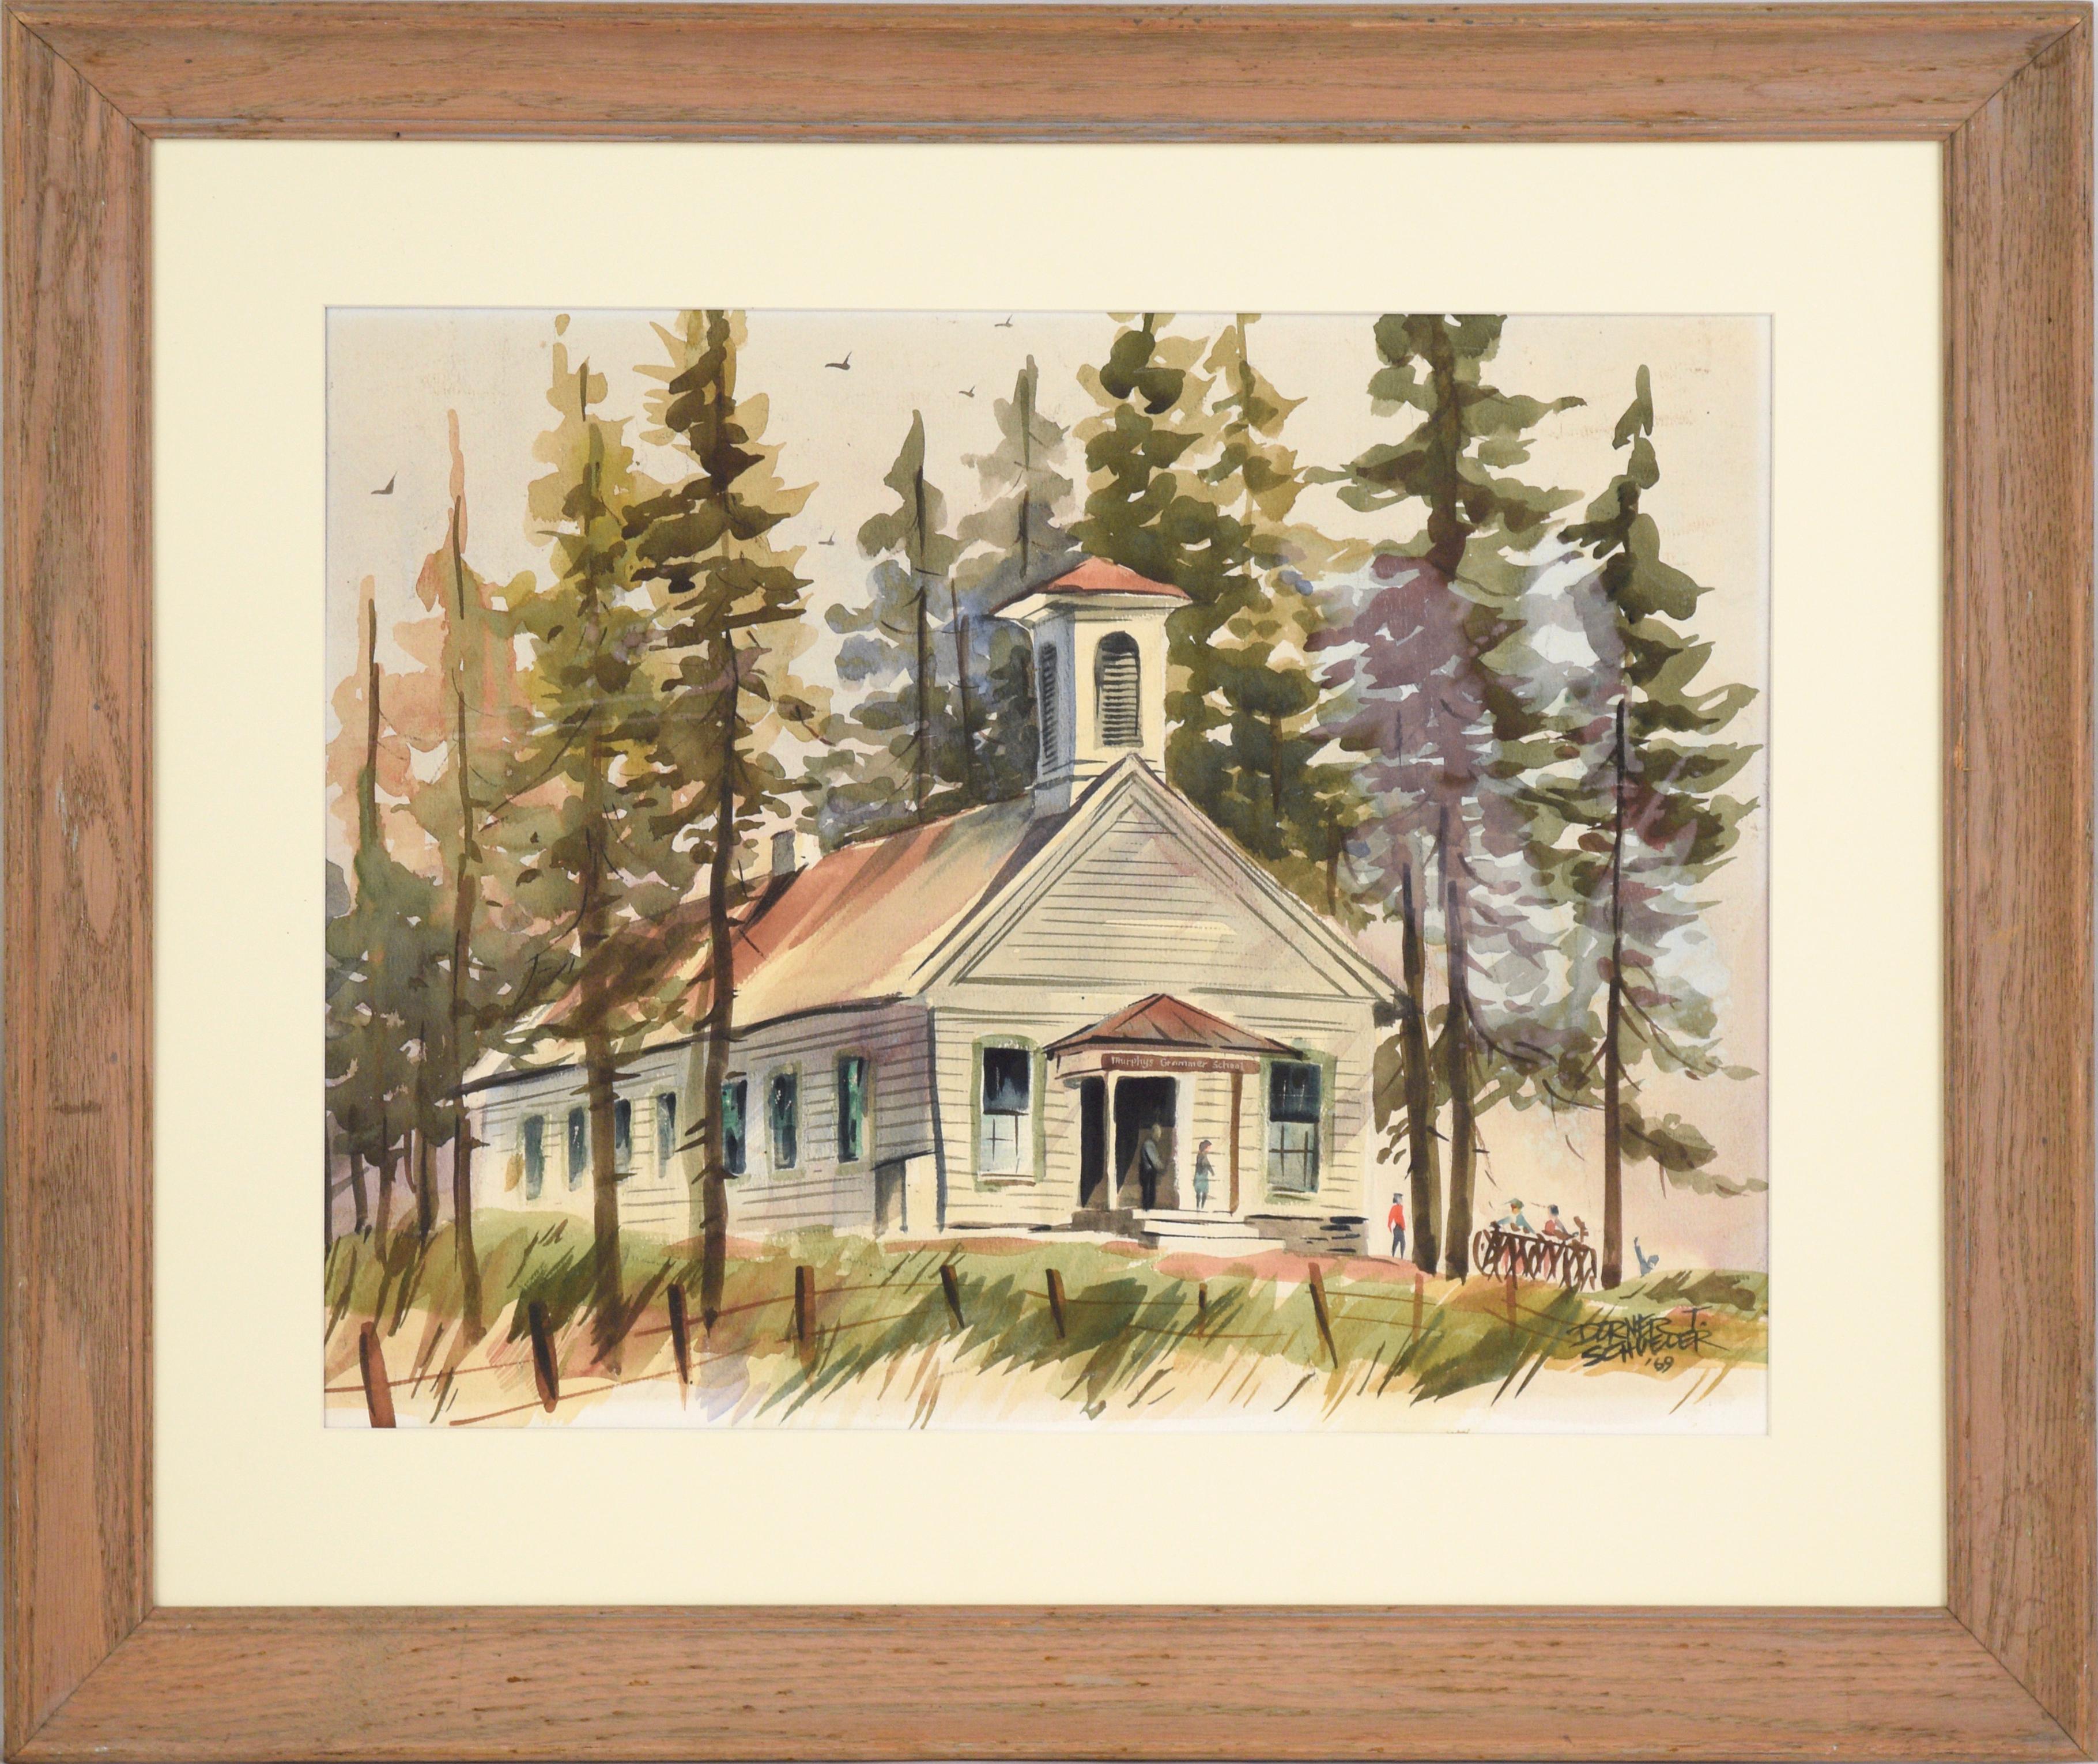 "Murphys Grammer School" - Town Landscape in Watercolor on Illustration Board